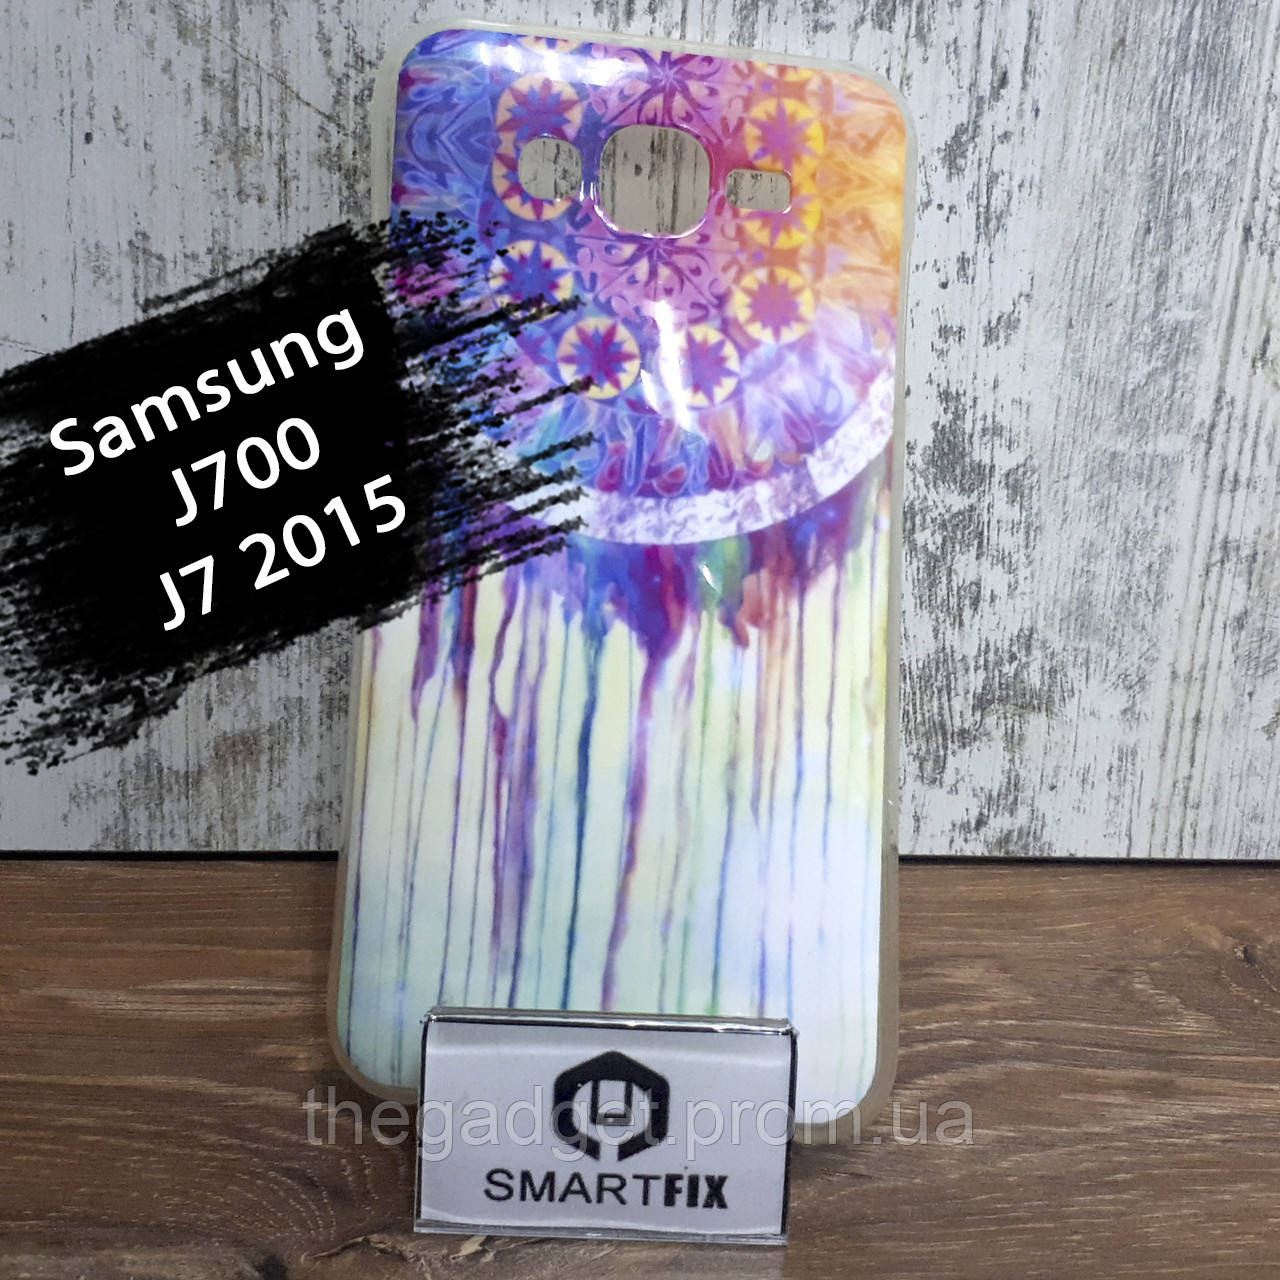 Чехол с рисунком для Samsung J7 2015  (J700)